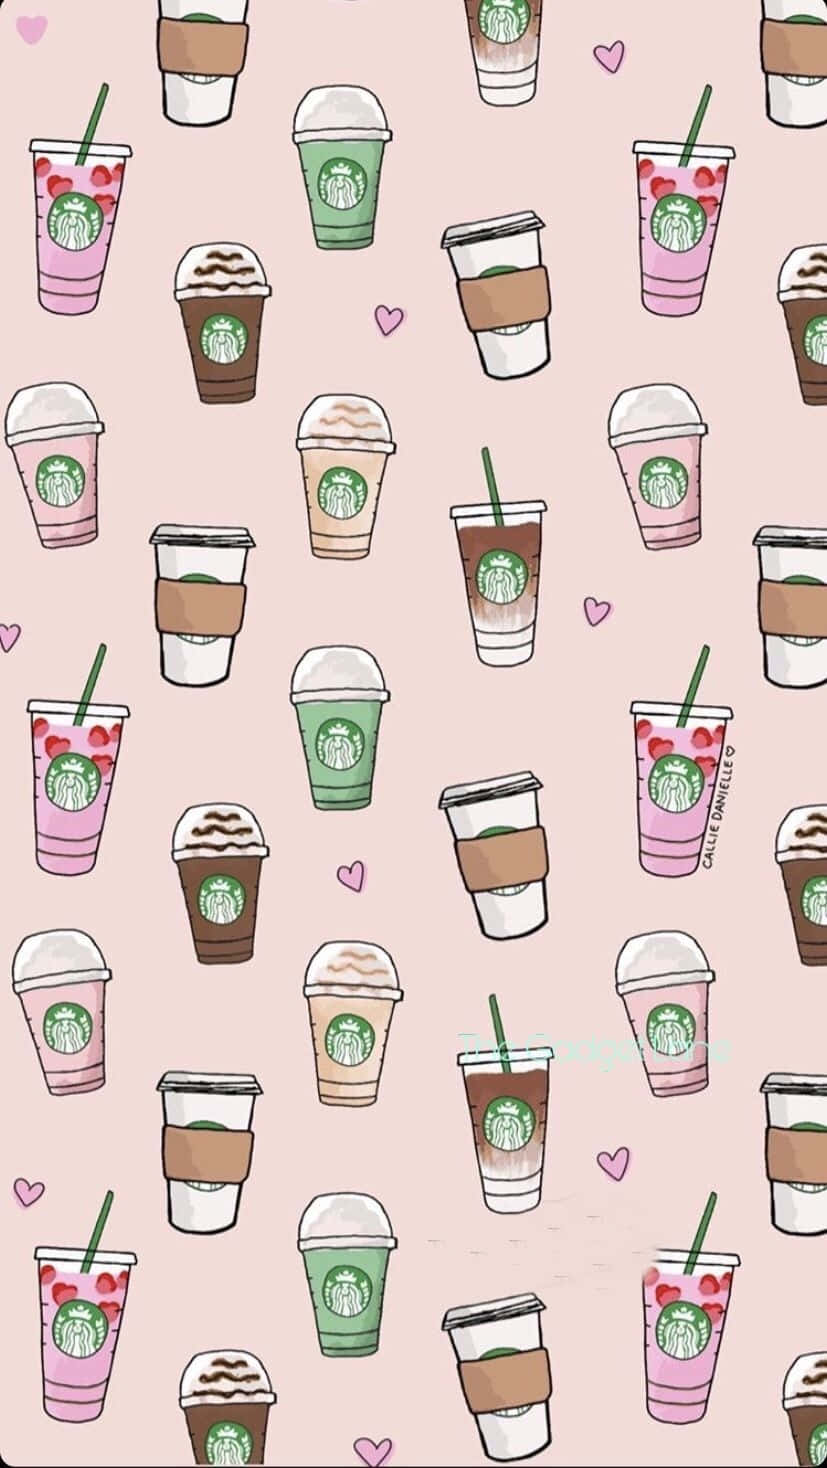 Starbucks Wallpapers Free HD Download 500 HQ  Unsplash